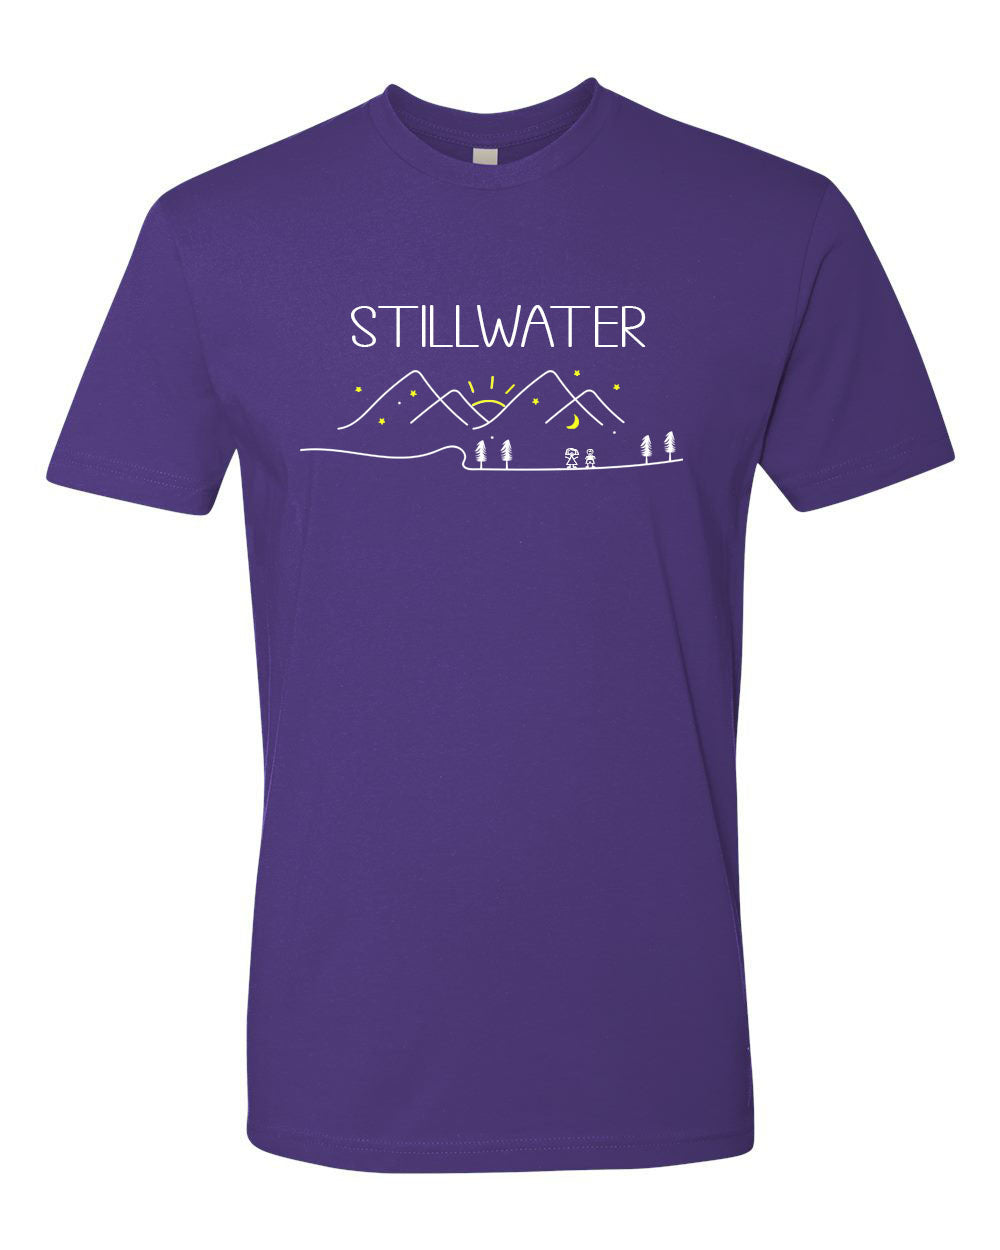 Stillwater Township T-Shirt